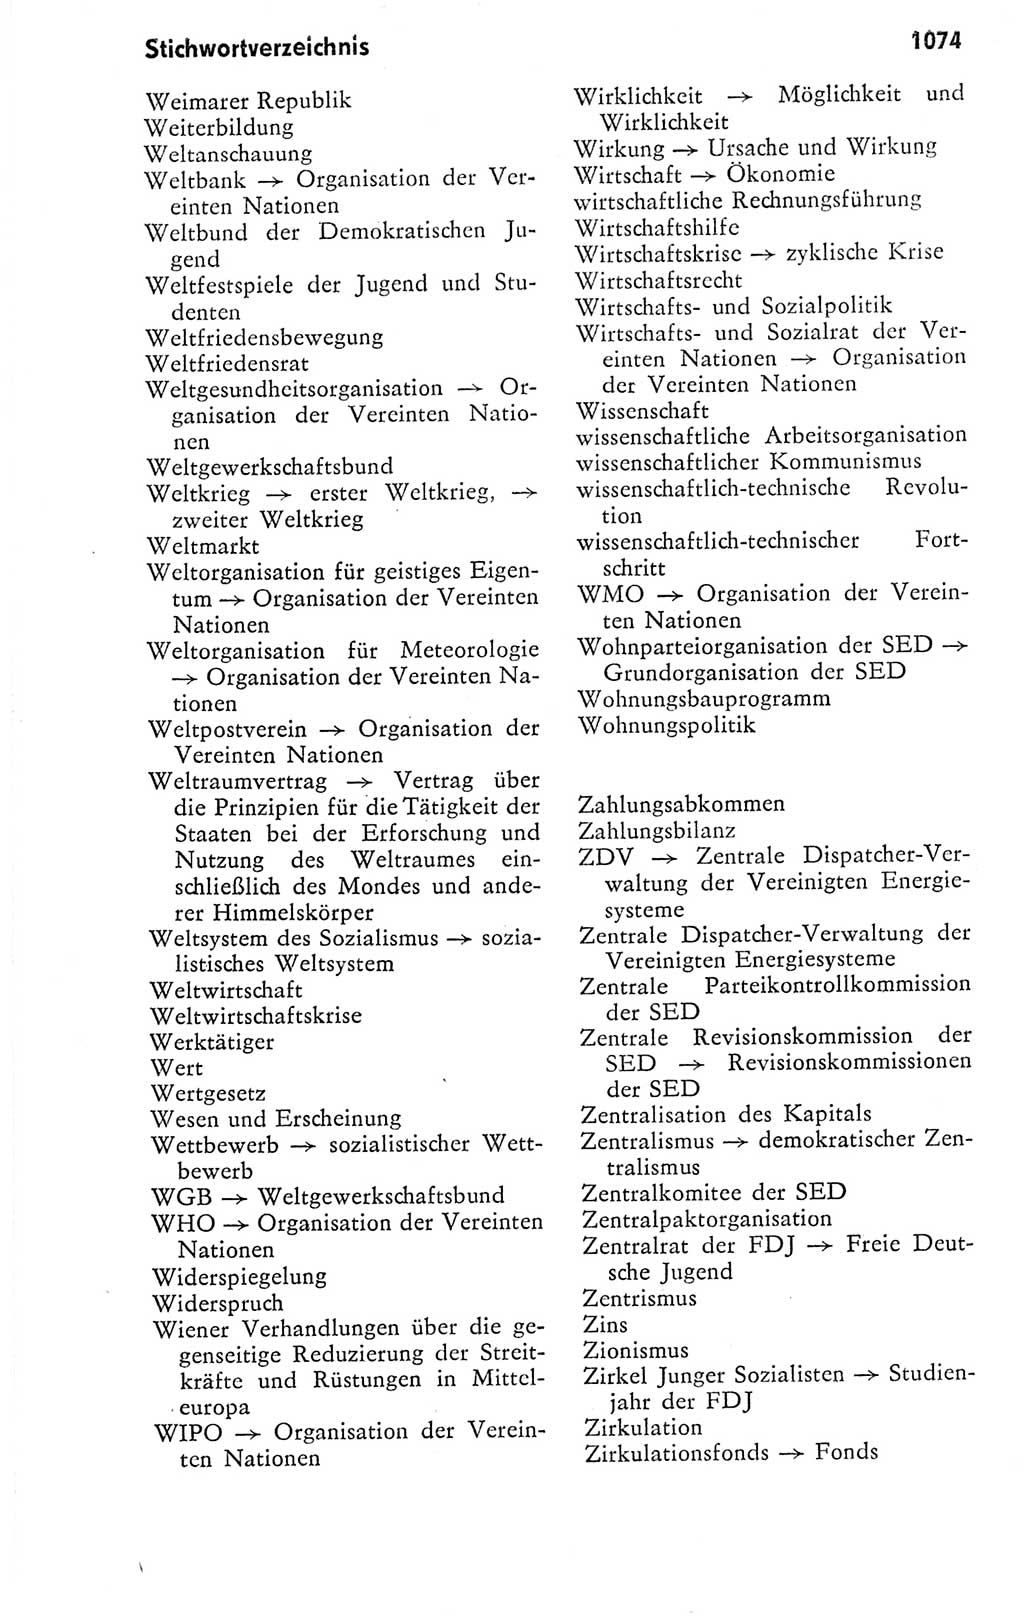 Kleines politisches Wörterbuch [Deutsche Demokratische Republik (DDR)] 1978, Seite 1074 (Kl. pol. Wb. DDR 1978, S. 1074)